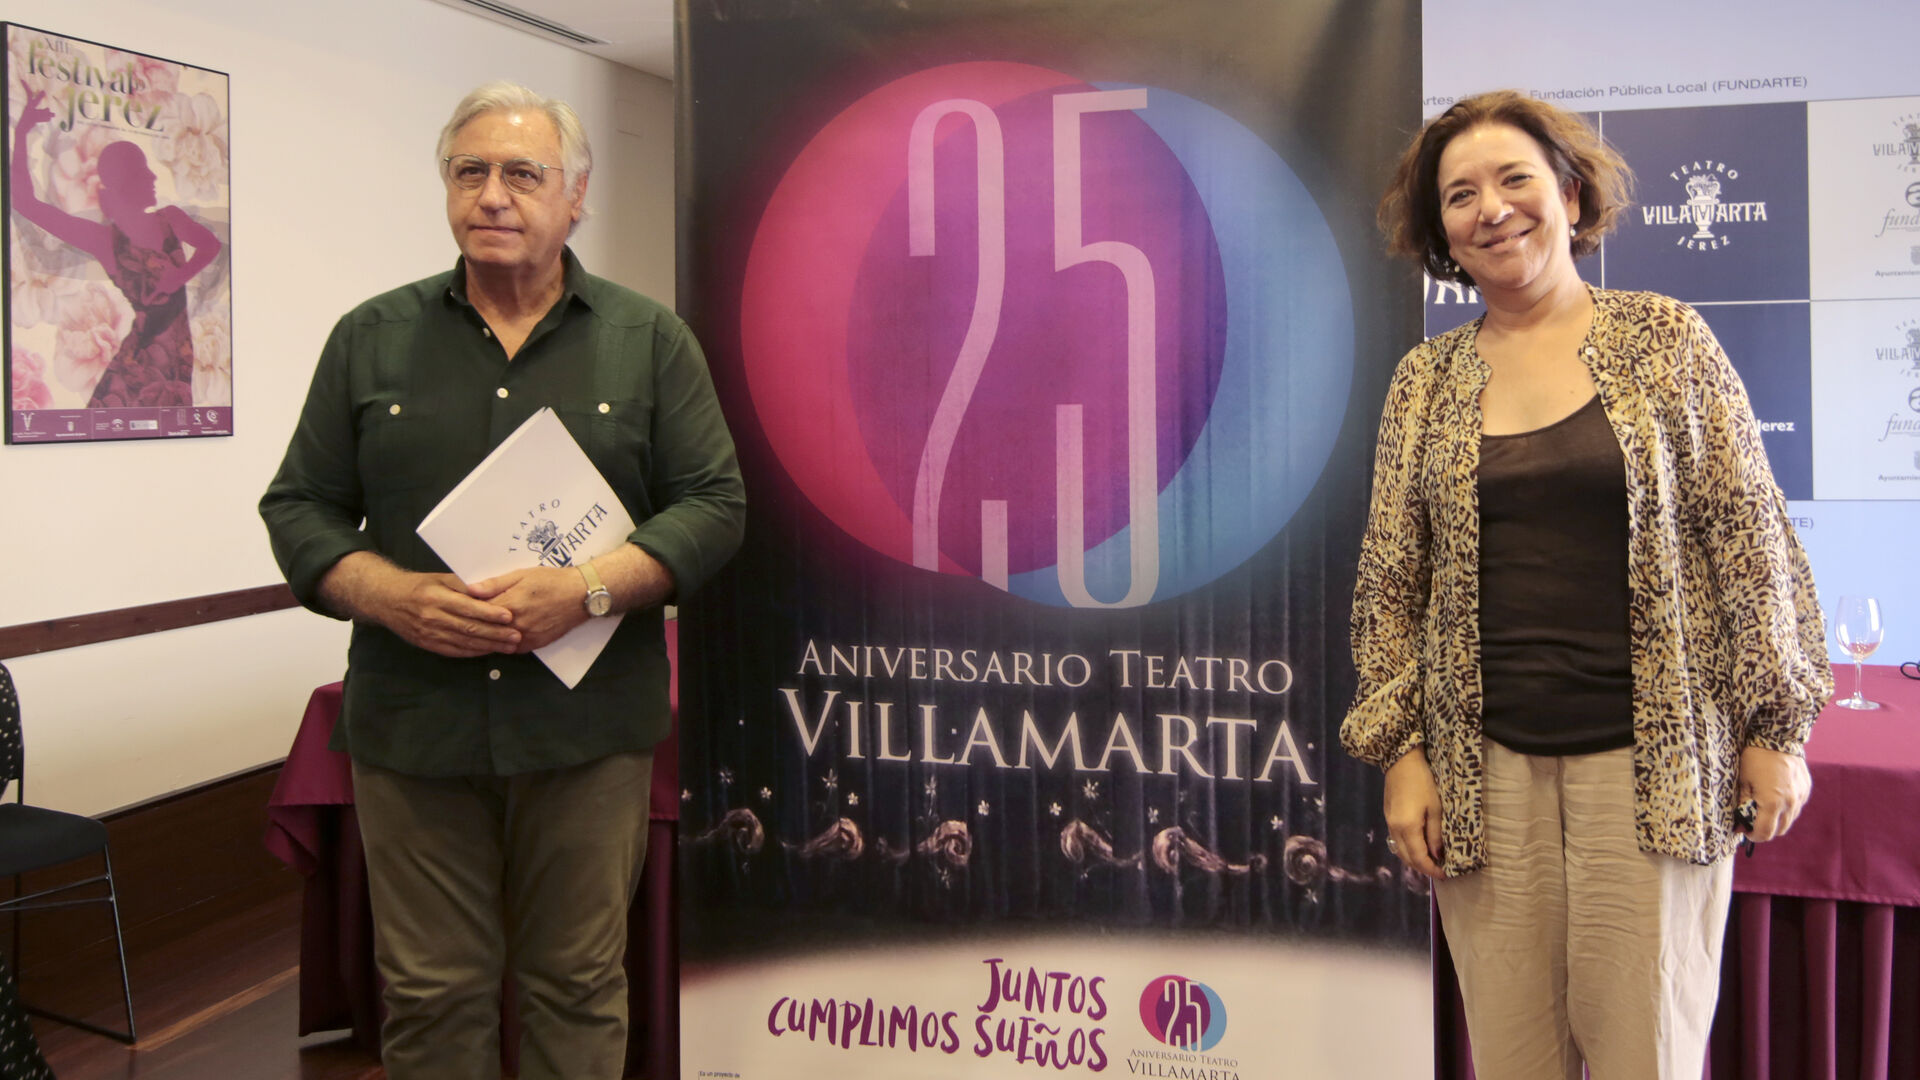 Francisco Camas e Isamay Benavente presentaron la programaci&oacute;n especial del Teatro Villamarta por su 25 aniversario.